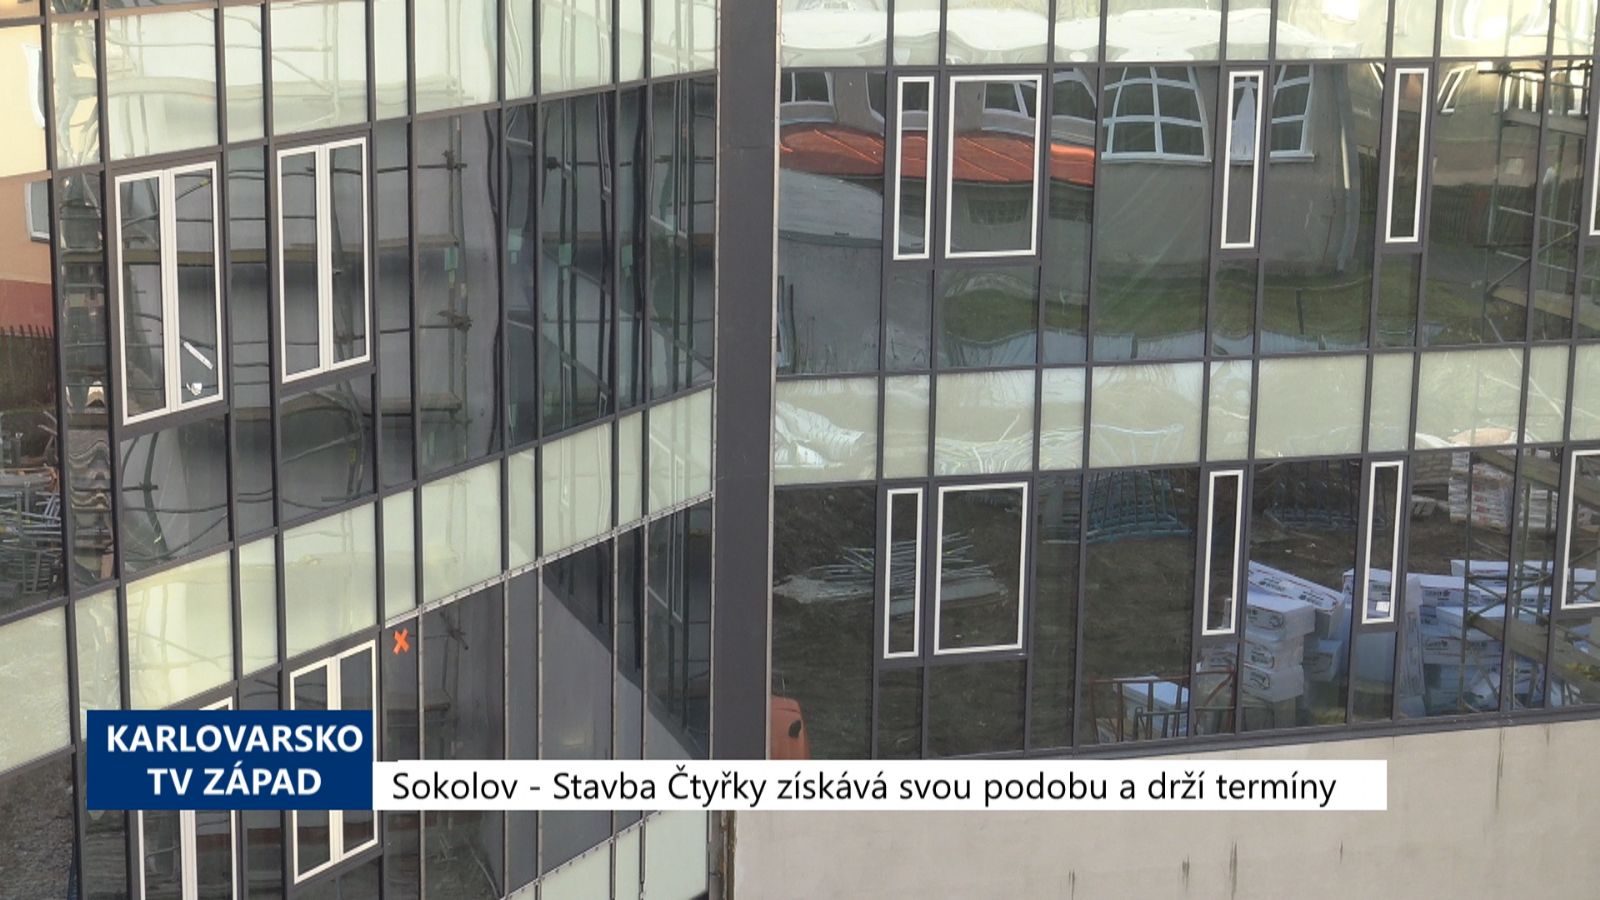 Sokolov: Stavba Čtyřky získává svou podobu a drží termíny (TV Západ)